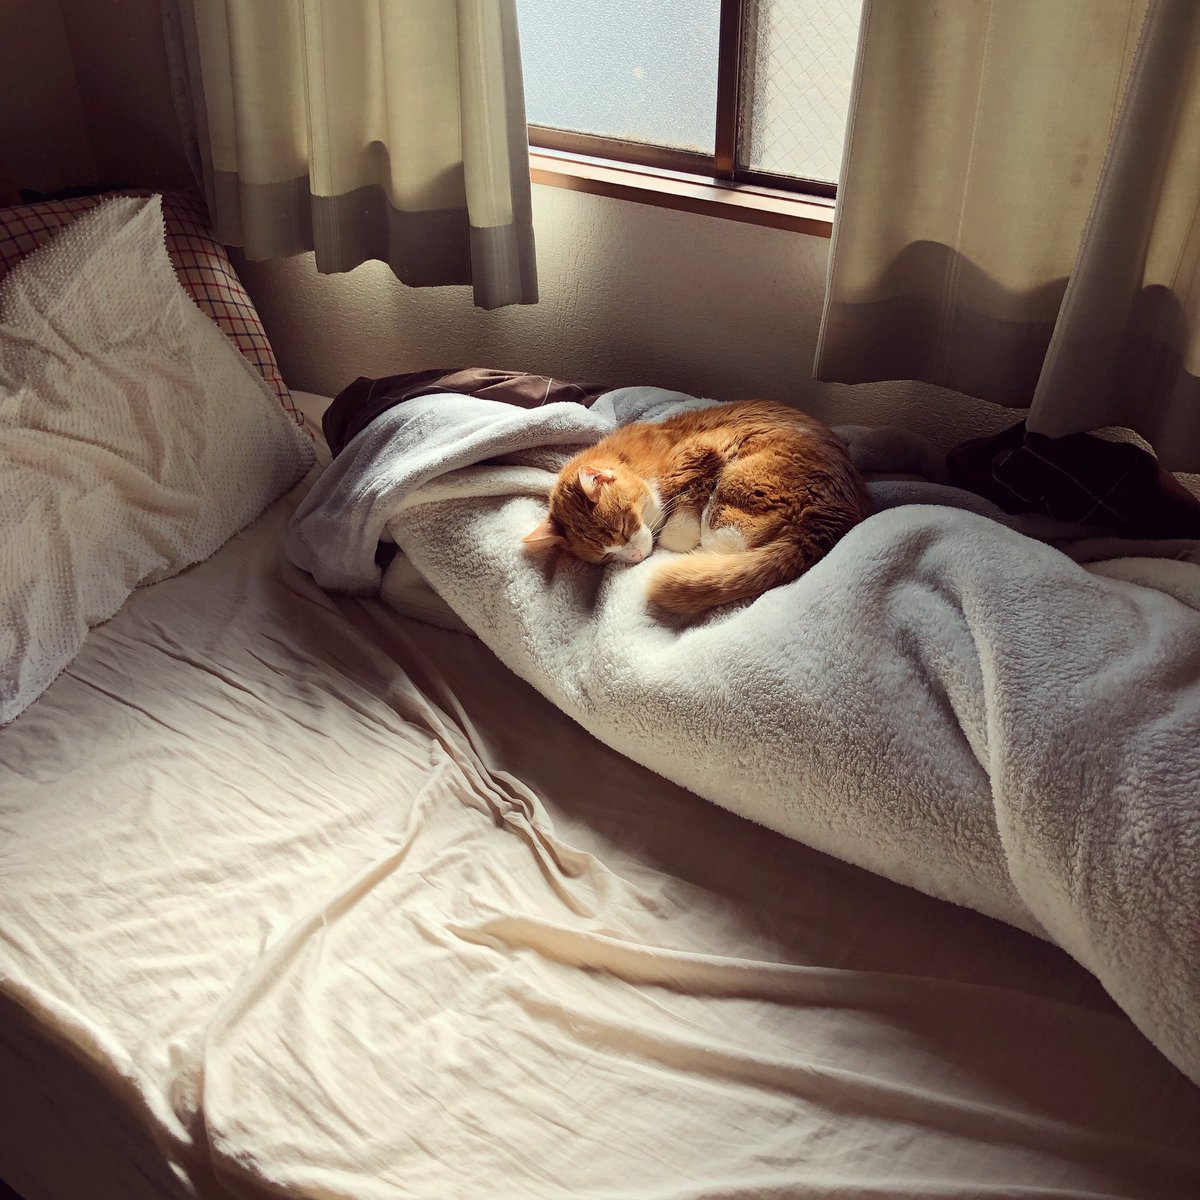 「人が起きた時のままの布団で眠る猫。 」|たじま なおとのイラスト